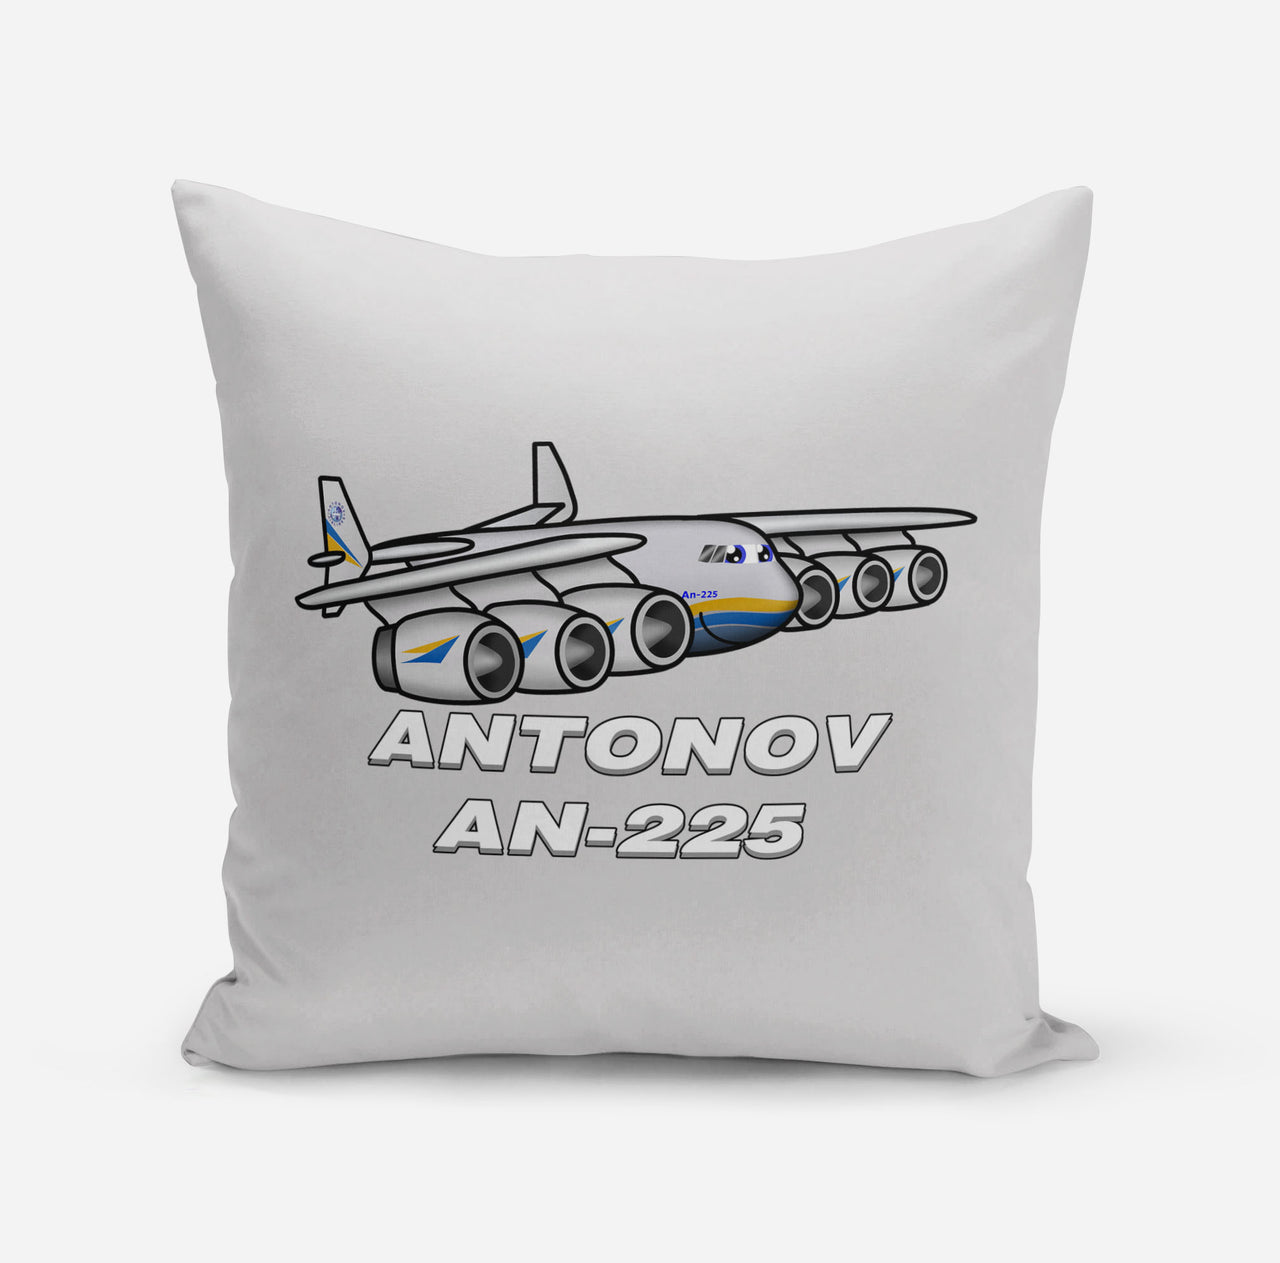 Antonov AN-225 (25) Designed Pillows